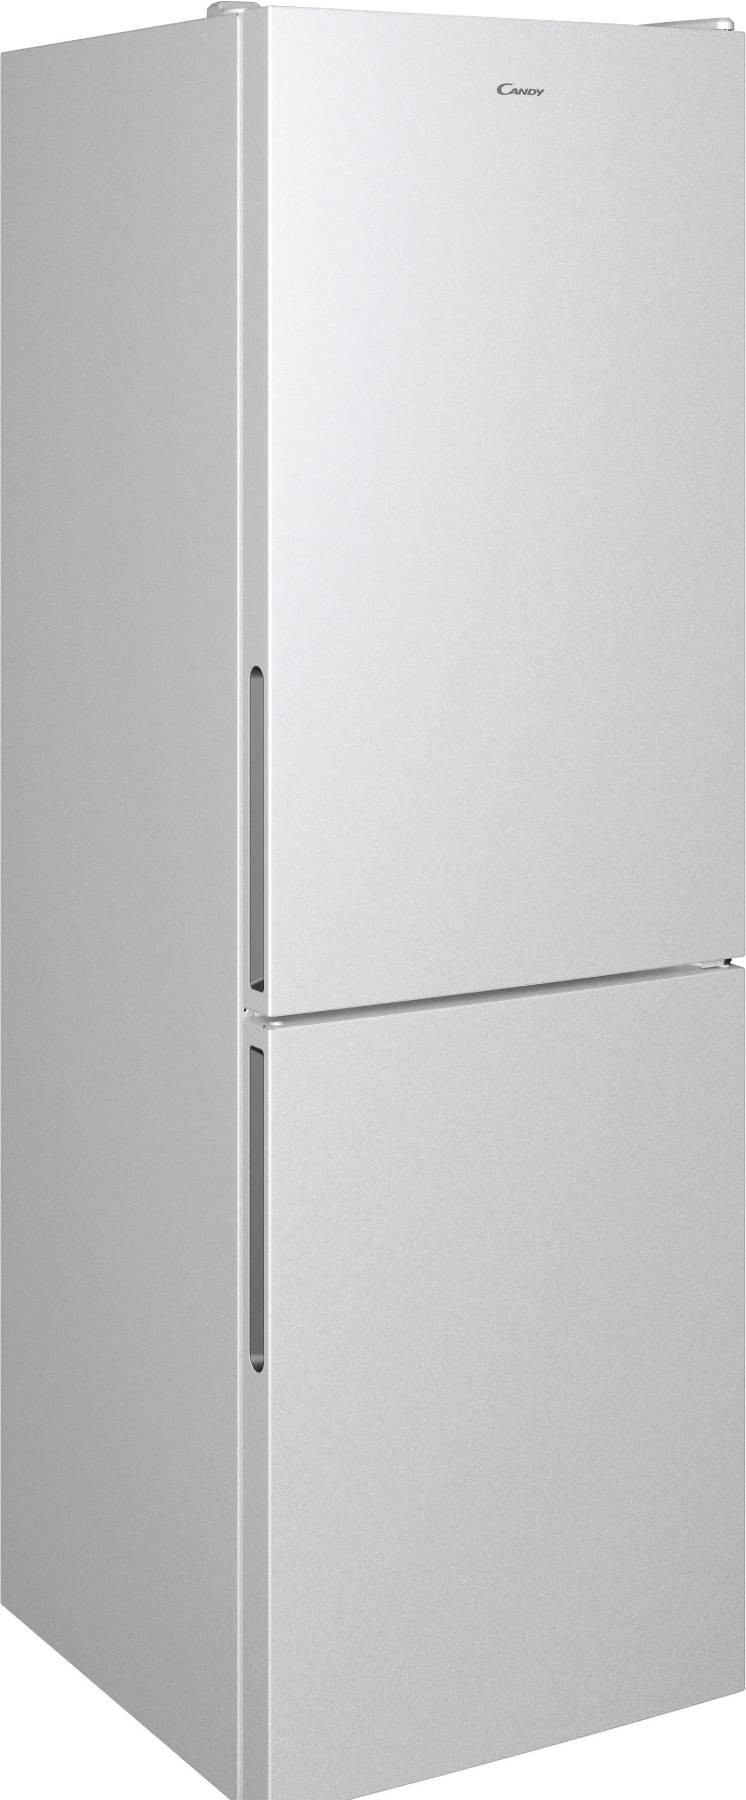 CANDY Réfrigérateur congélateur bas Total No Frost 341L Gris - CCE3T618ES